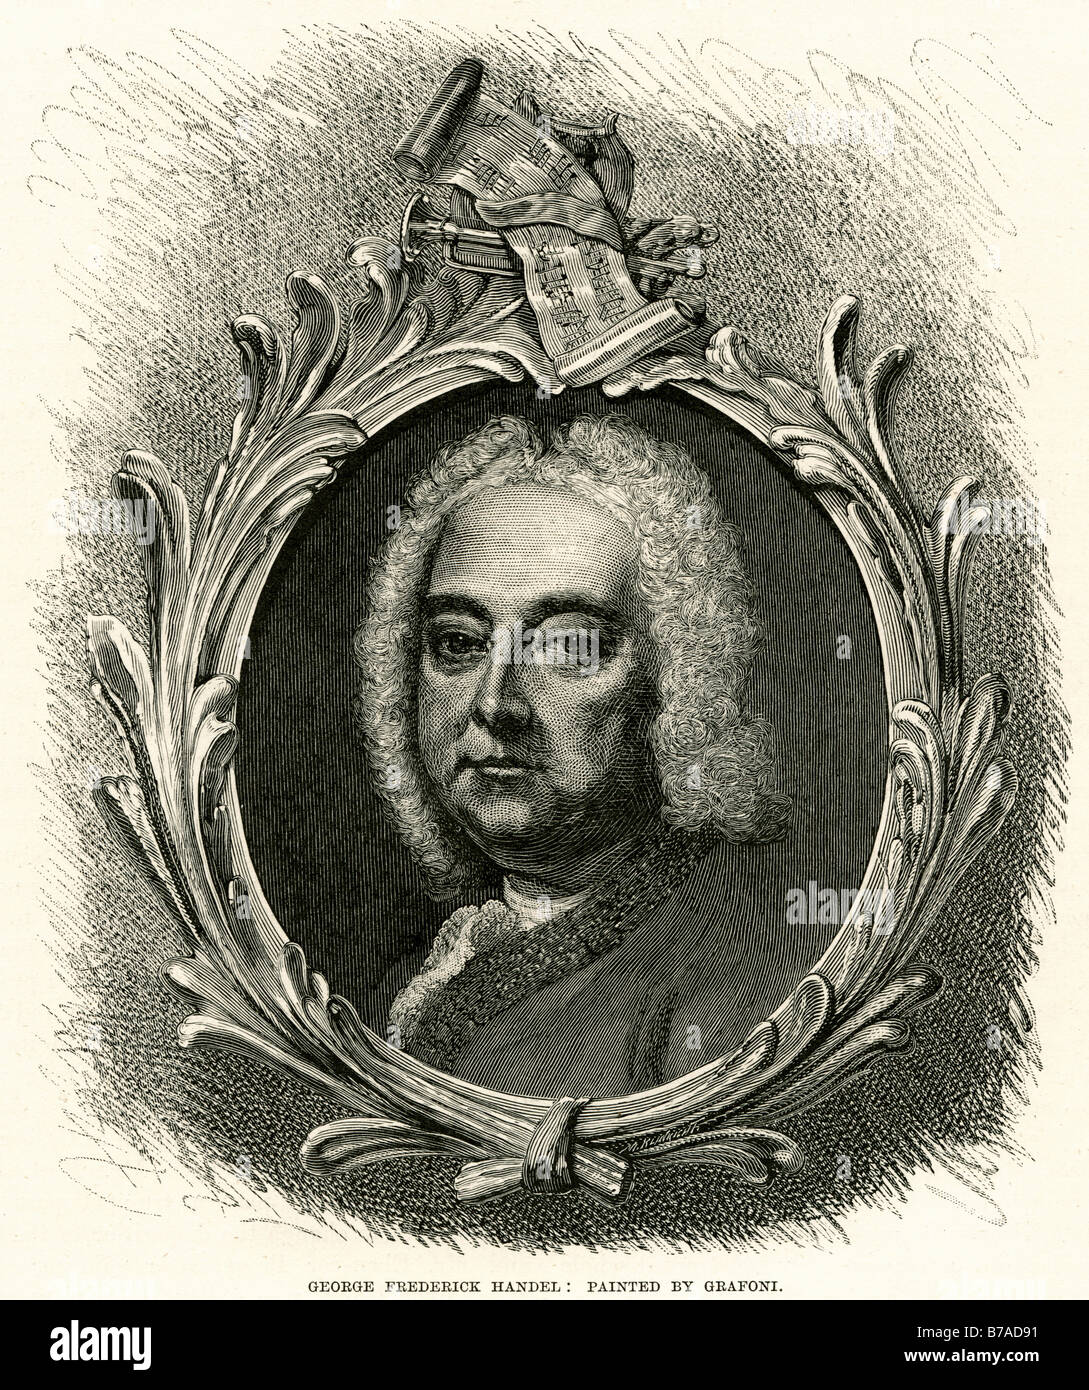 George Frideric Handel 23 février 1685 - 14 avril 1759 était un compositeur baroque Anglais de naissance allemande qui est célèbre pour ses op Banque D'Images